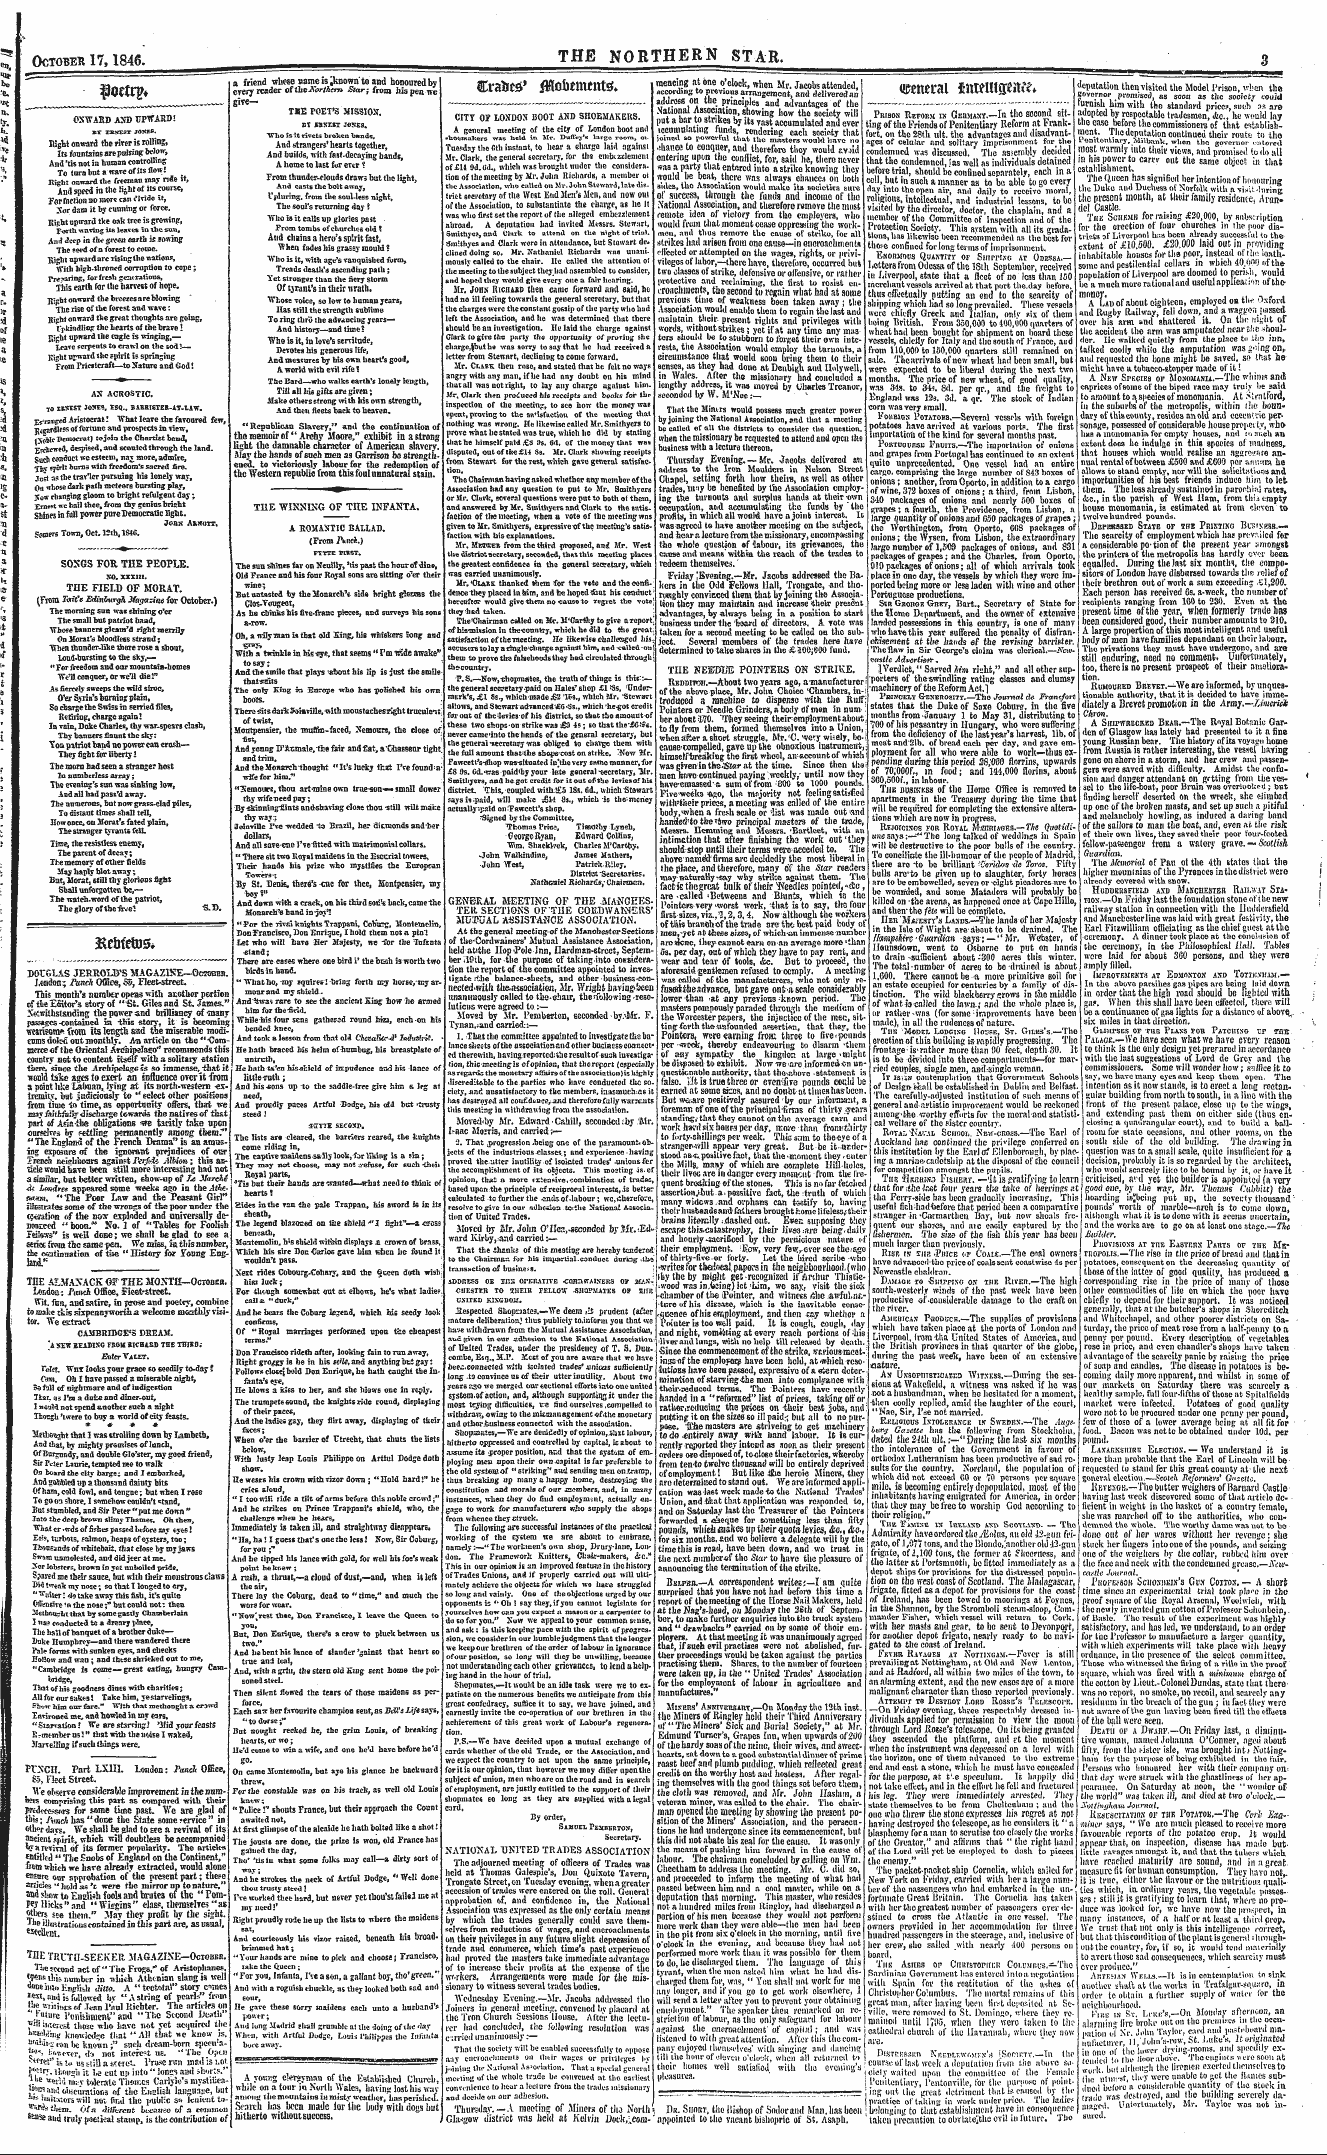 Northern Star (1837-1852): jS F Y, 2nd edition - A>Acrostic. To Ersest 305es, Esq., Baeri...